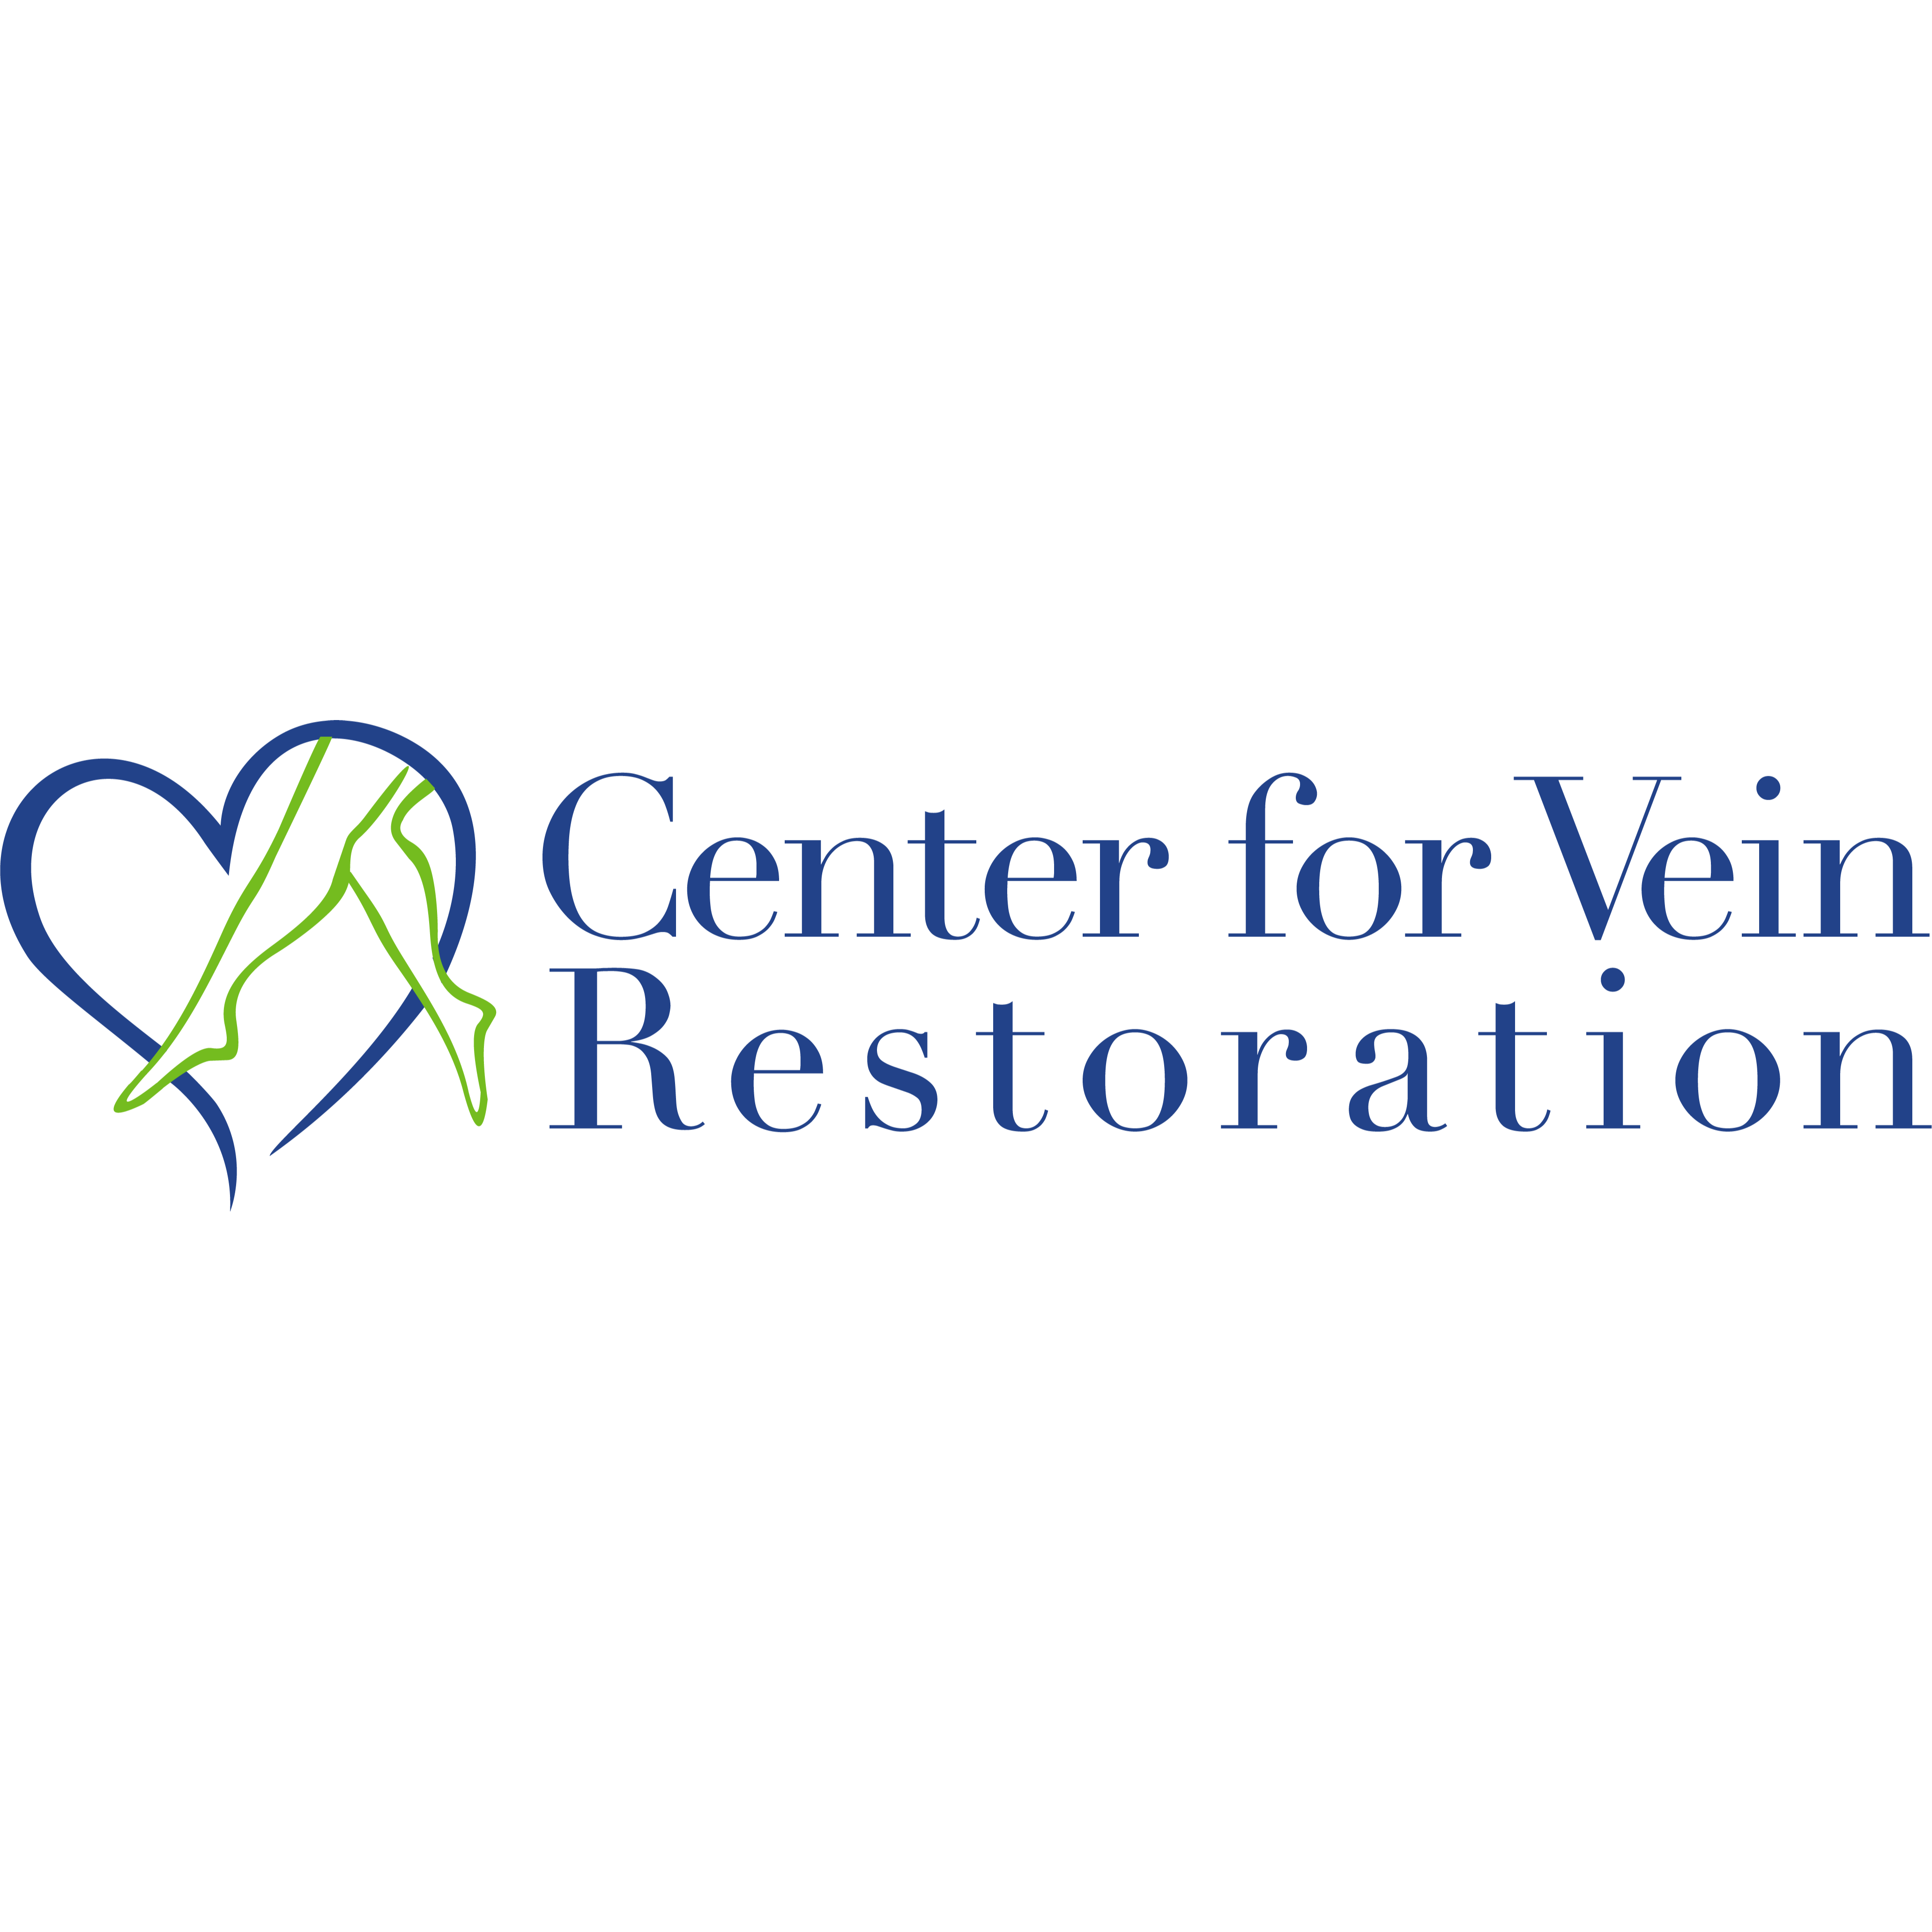 Center for Vein Restoration | Dr. Richard Nguyen - Woodbridge, VA 22191 - (703)634-4458 | ShowMeLocal.com